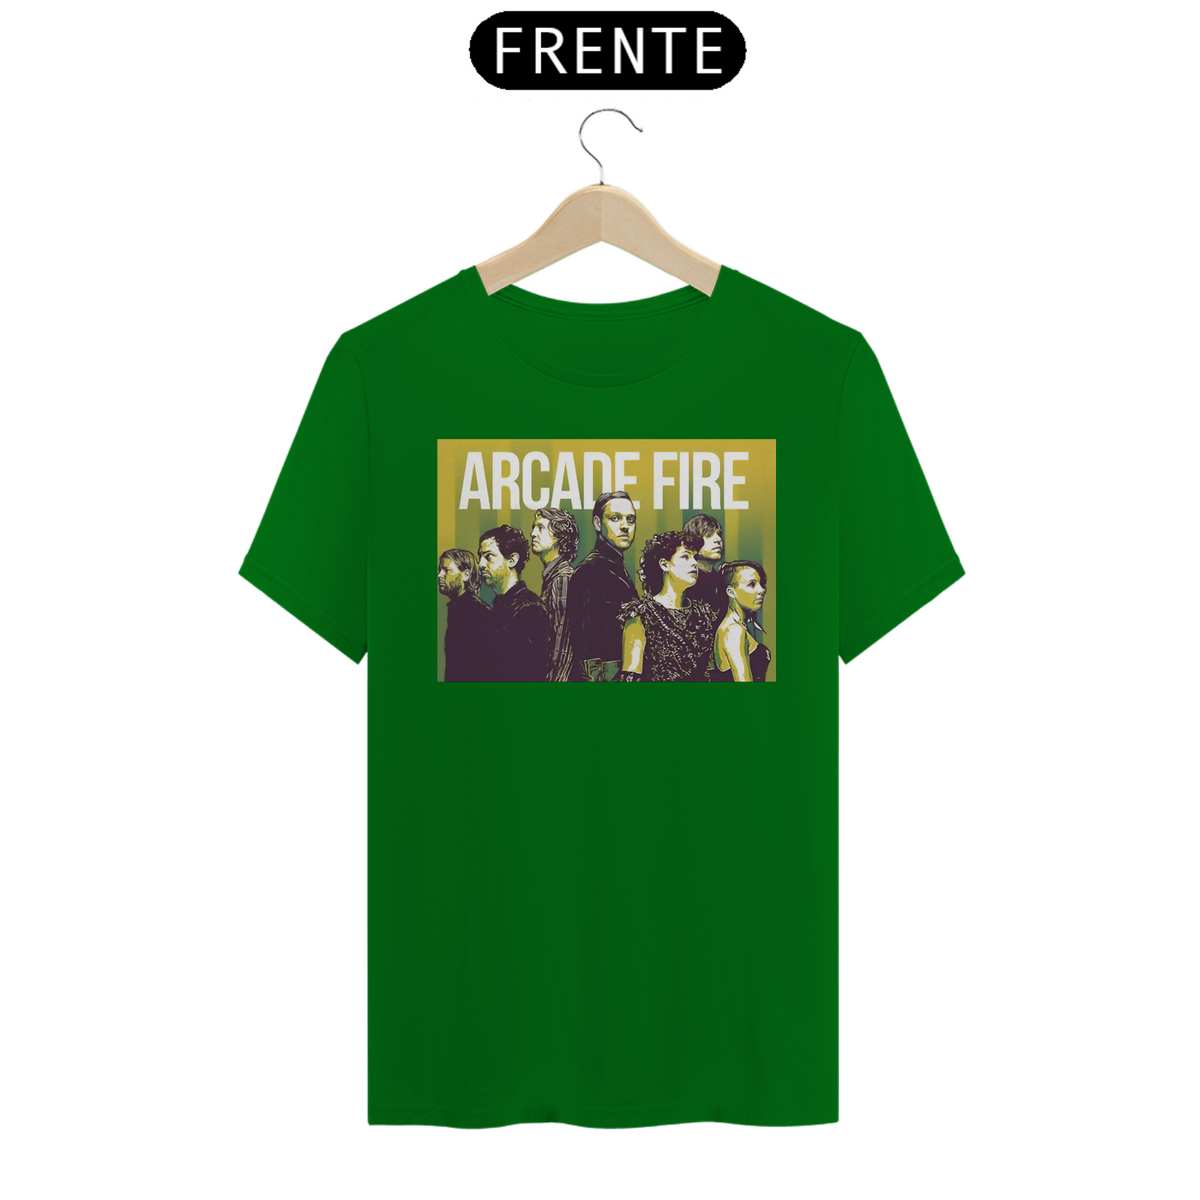 Nome do produto: Arcade Fire